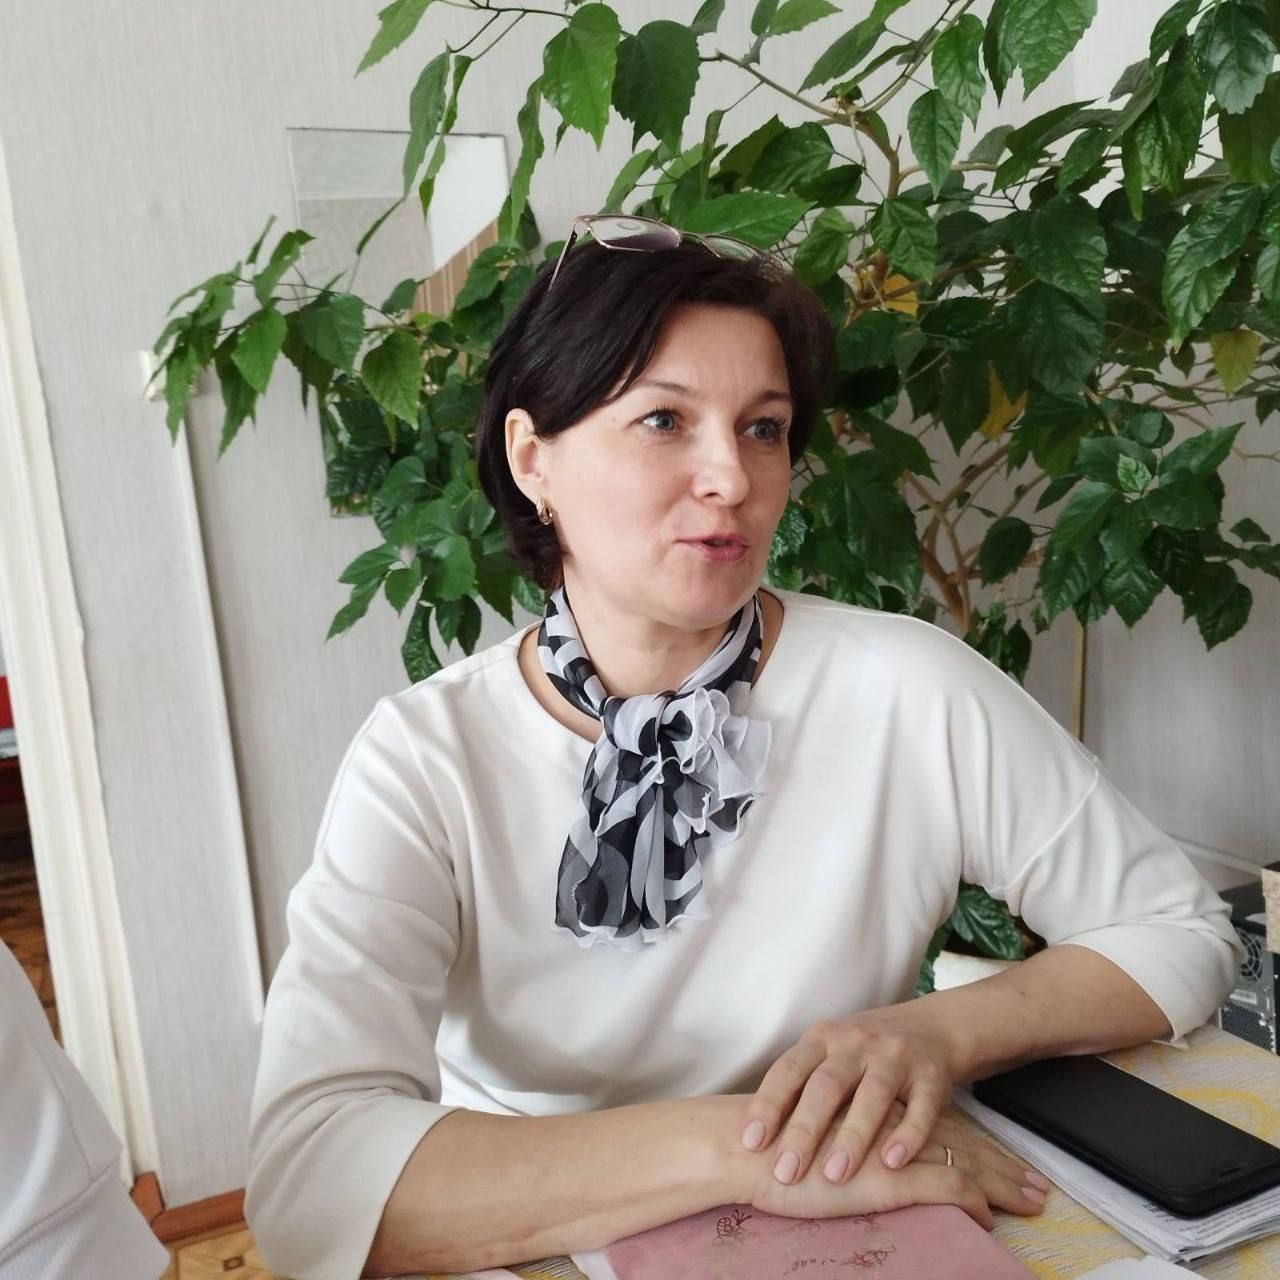 Ульяновские юристы провели мероприятия, направленные на поддержку и защиту прав и интересов женщин